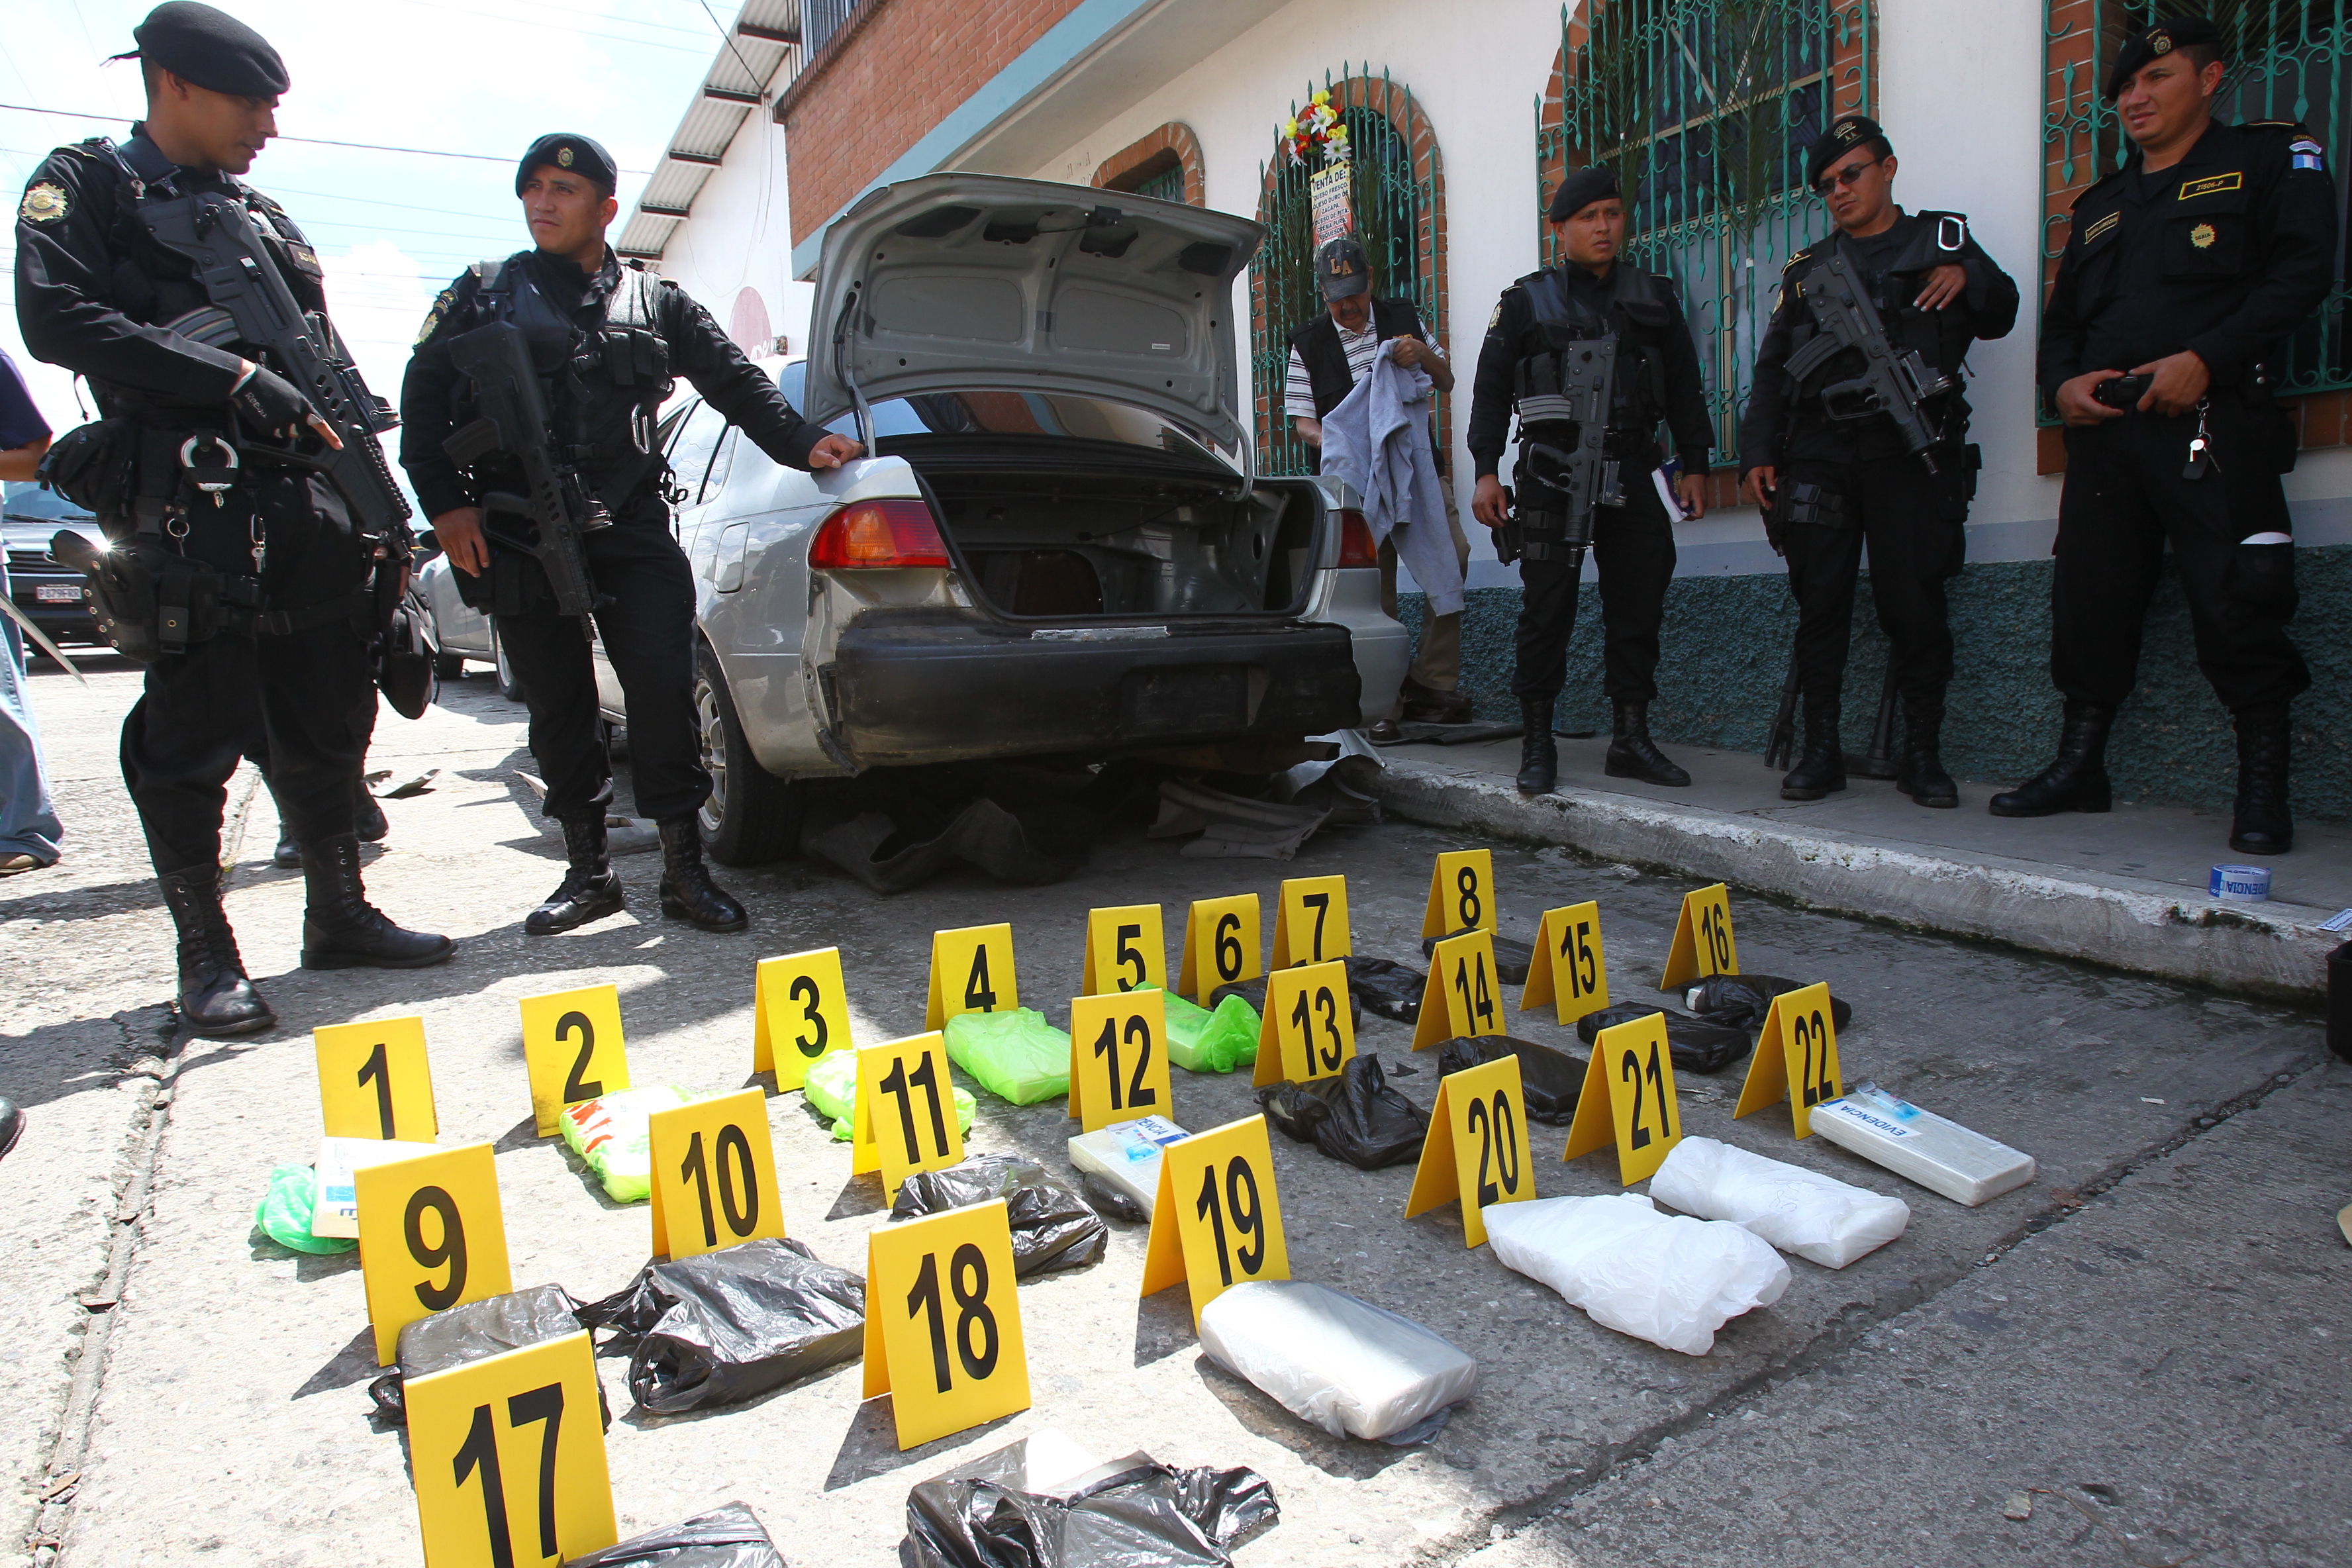 Imágenes de un decomiso de cocaína el año pasado en una carretera de Guatemala. (Foto Prensa Libre: Hemeroteca PL)